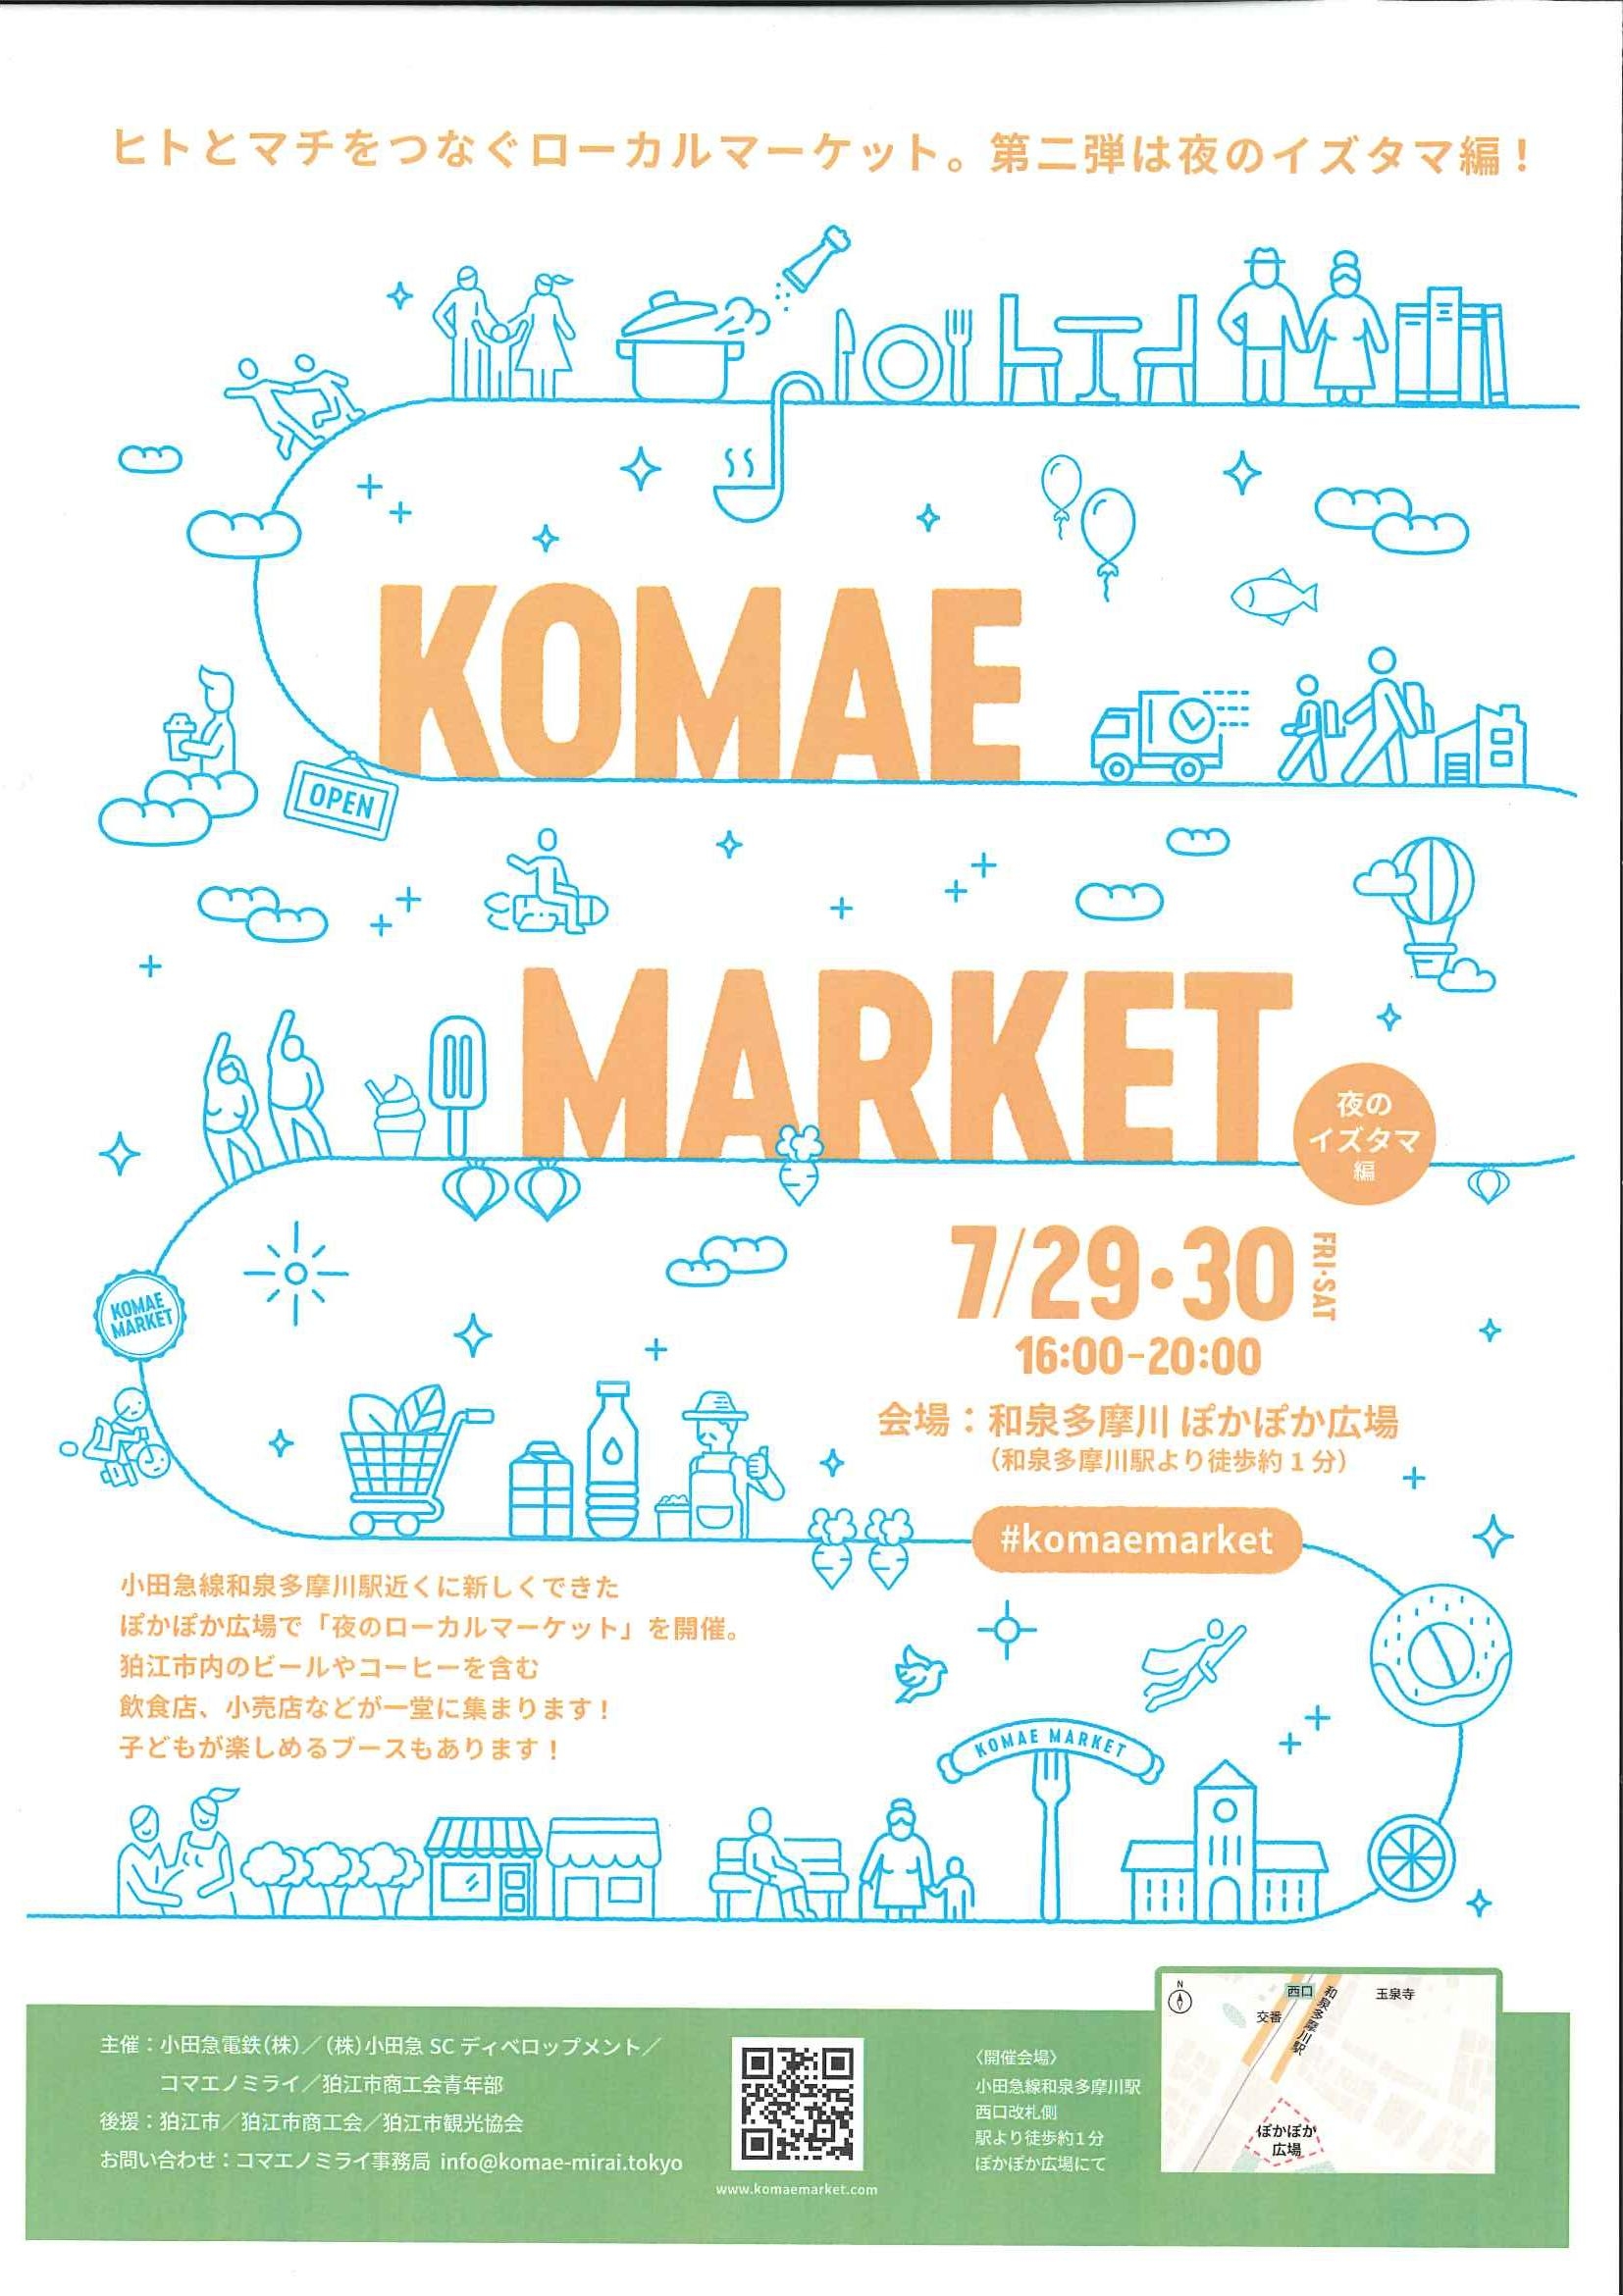 7/29.30 小田急線和泉多摩川駅にてコマエマーケットを開催します！